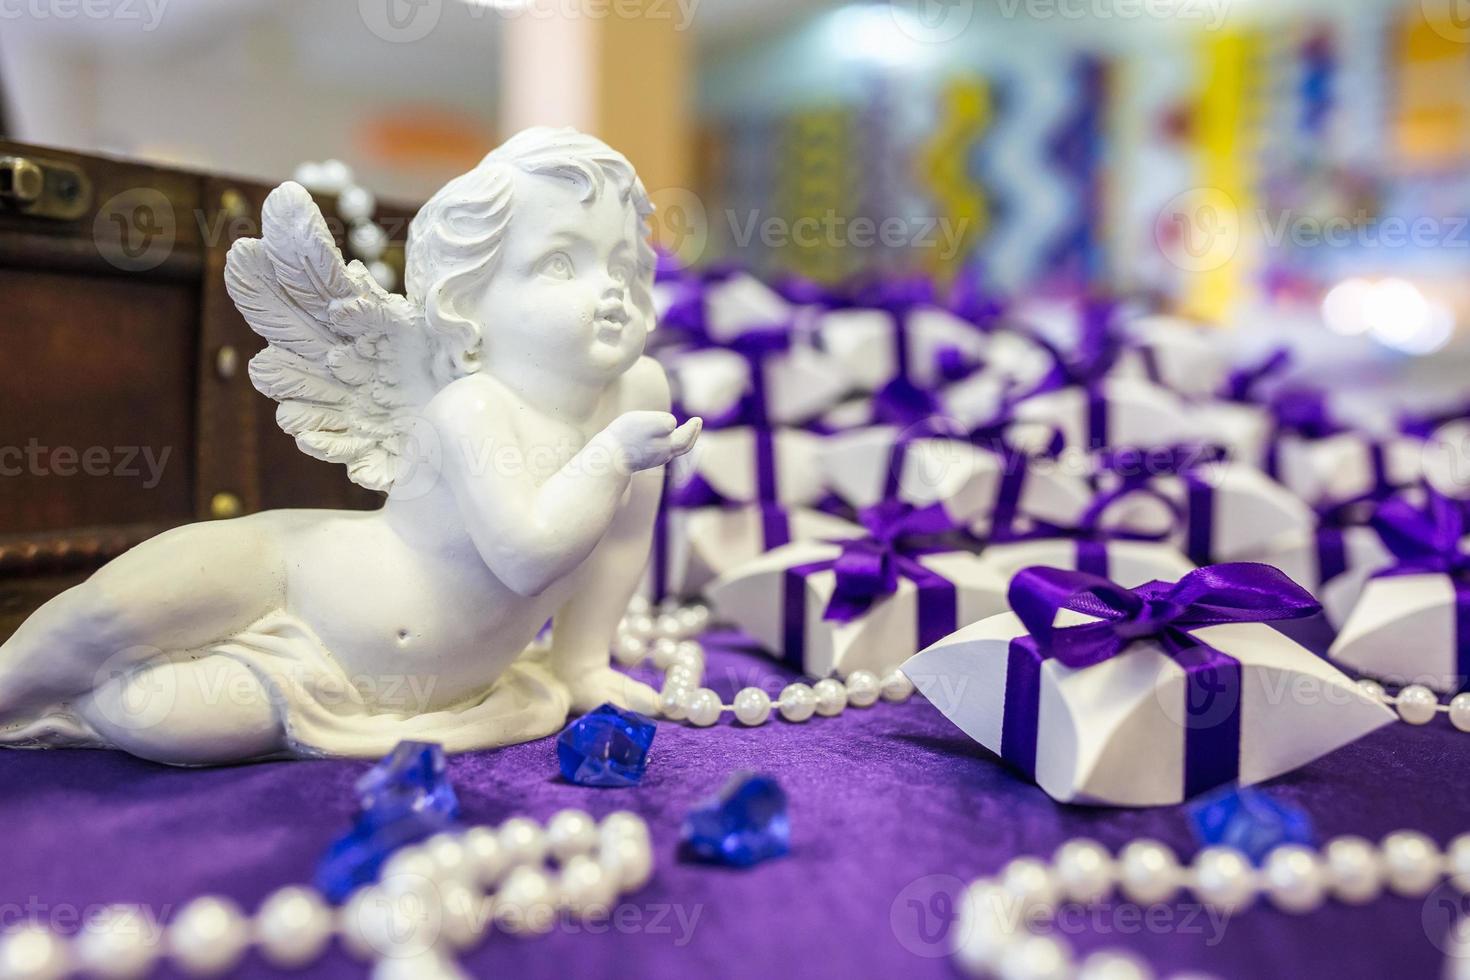 angelo in ceramica sul tavolo con tovaglia viola e piccoli regali per gli invitati degli sposi novelli foto